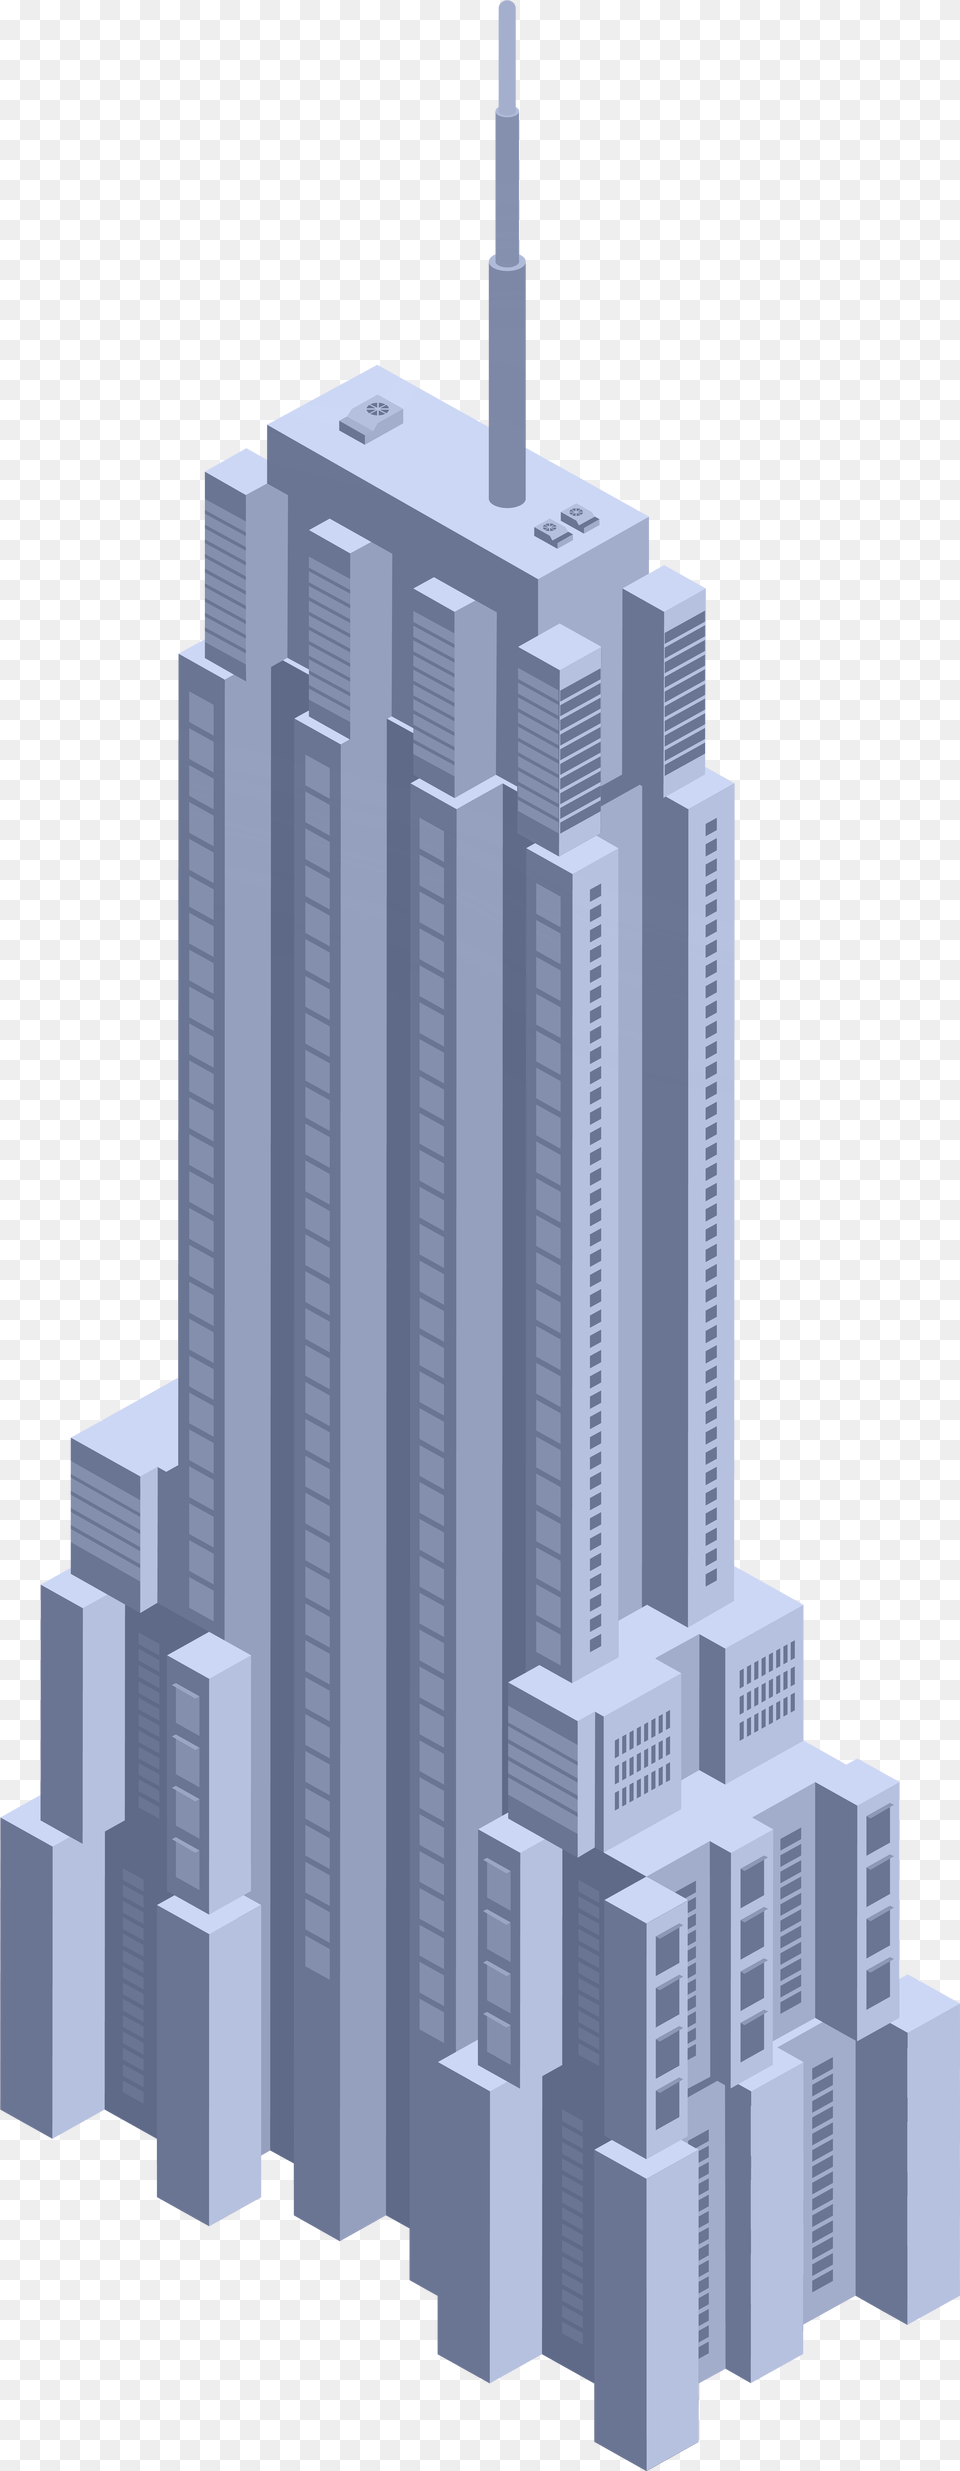 Business Skyscraper Clip Art Skyscraper Building Emoji, Architecture, High Rise, City, Urban Free Transparent Png